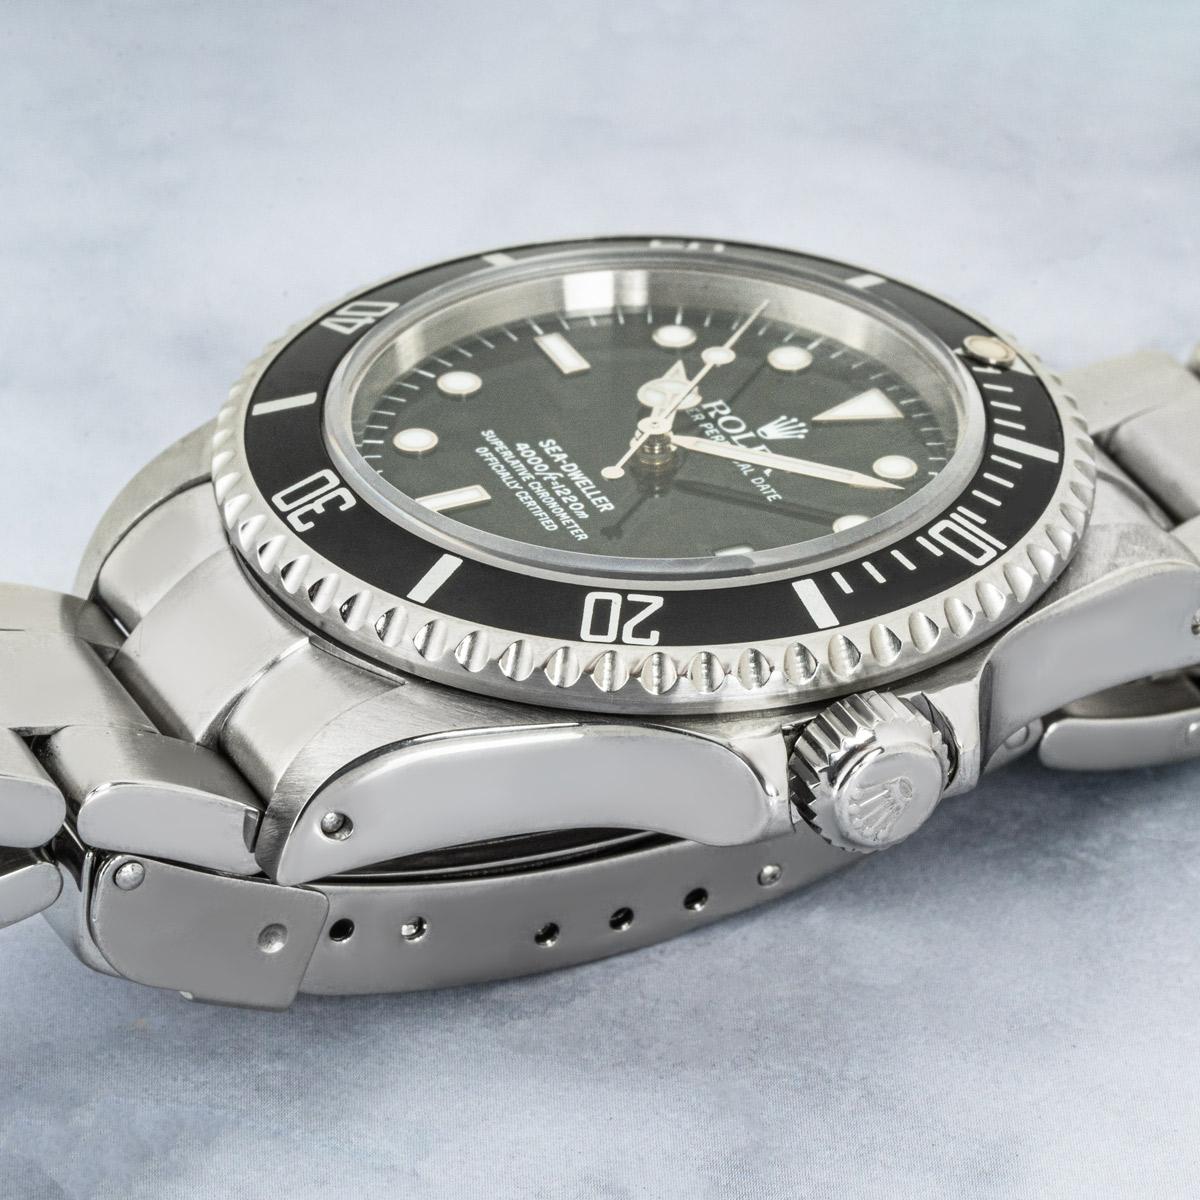 Eine 40 mm große Sea-Dweller aus Stahl von Rolex. Sie verfügt über ein schwarzes Zifferblatt mit applizierten Stundenmarkierungen, eine Datumsanzeige und eine schwarze, einseitig drehbare Lünette mit 60-Minuten-Teilung.

Ausgestattet mit einem